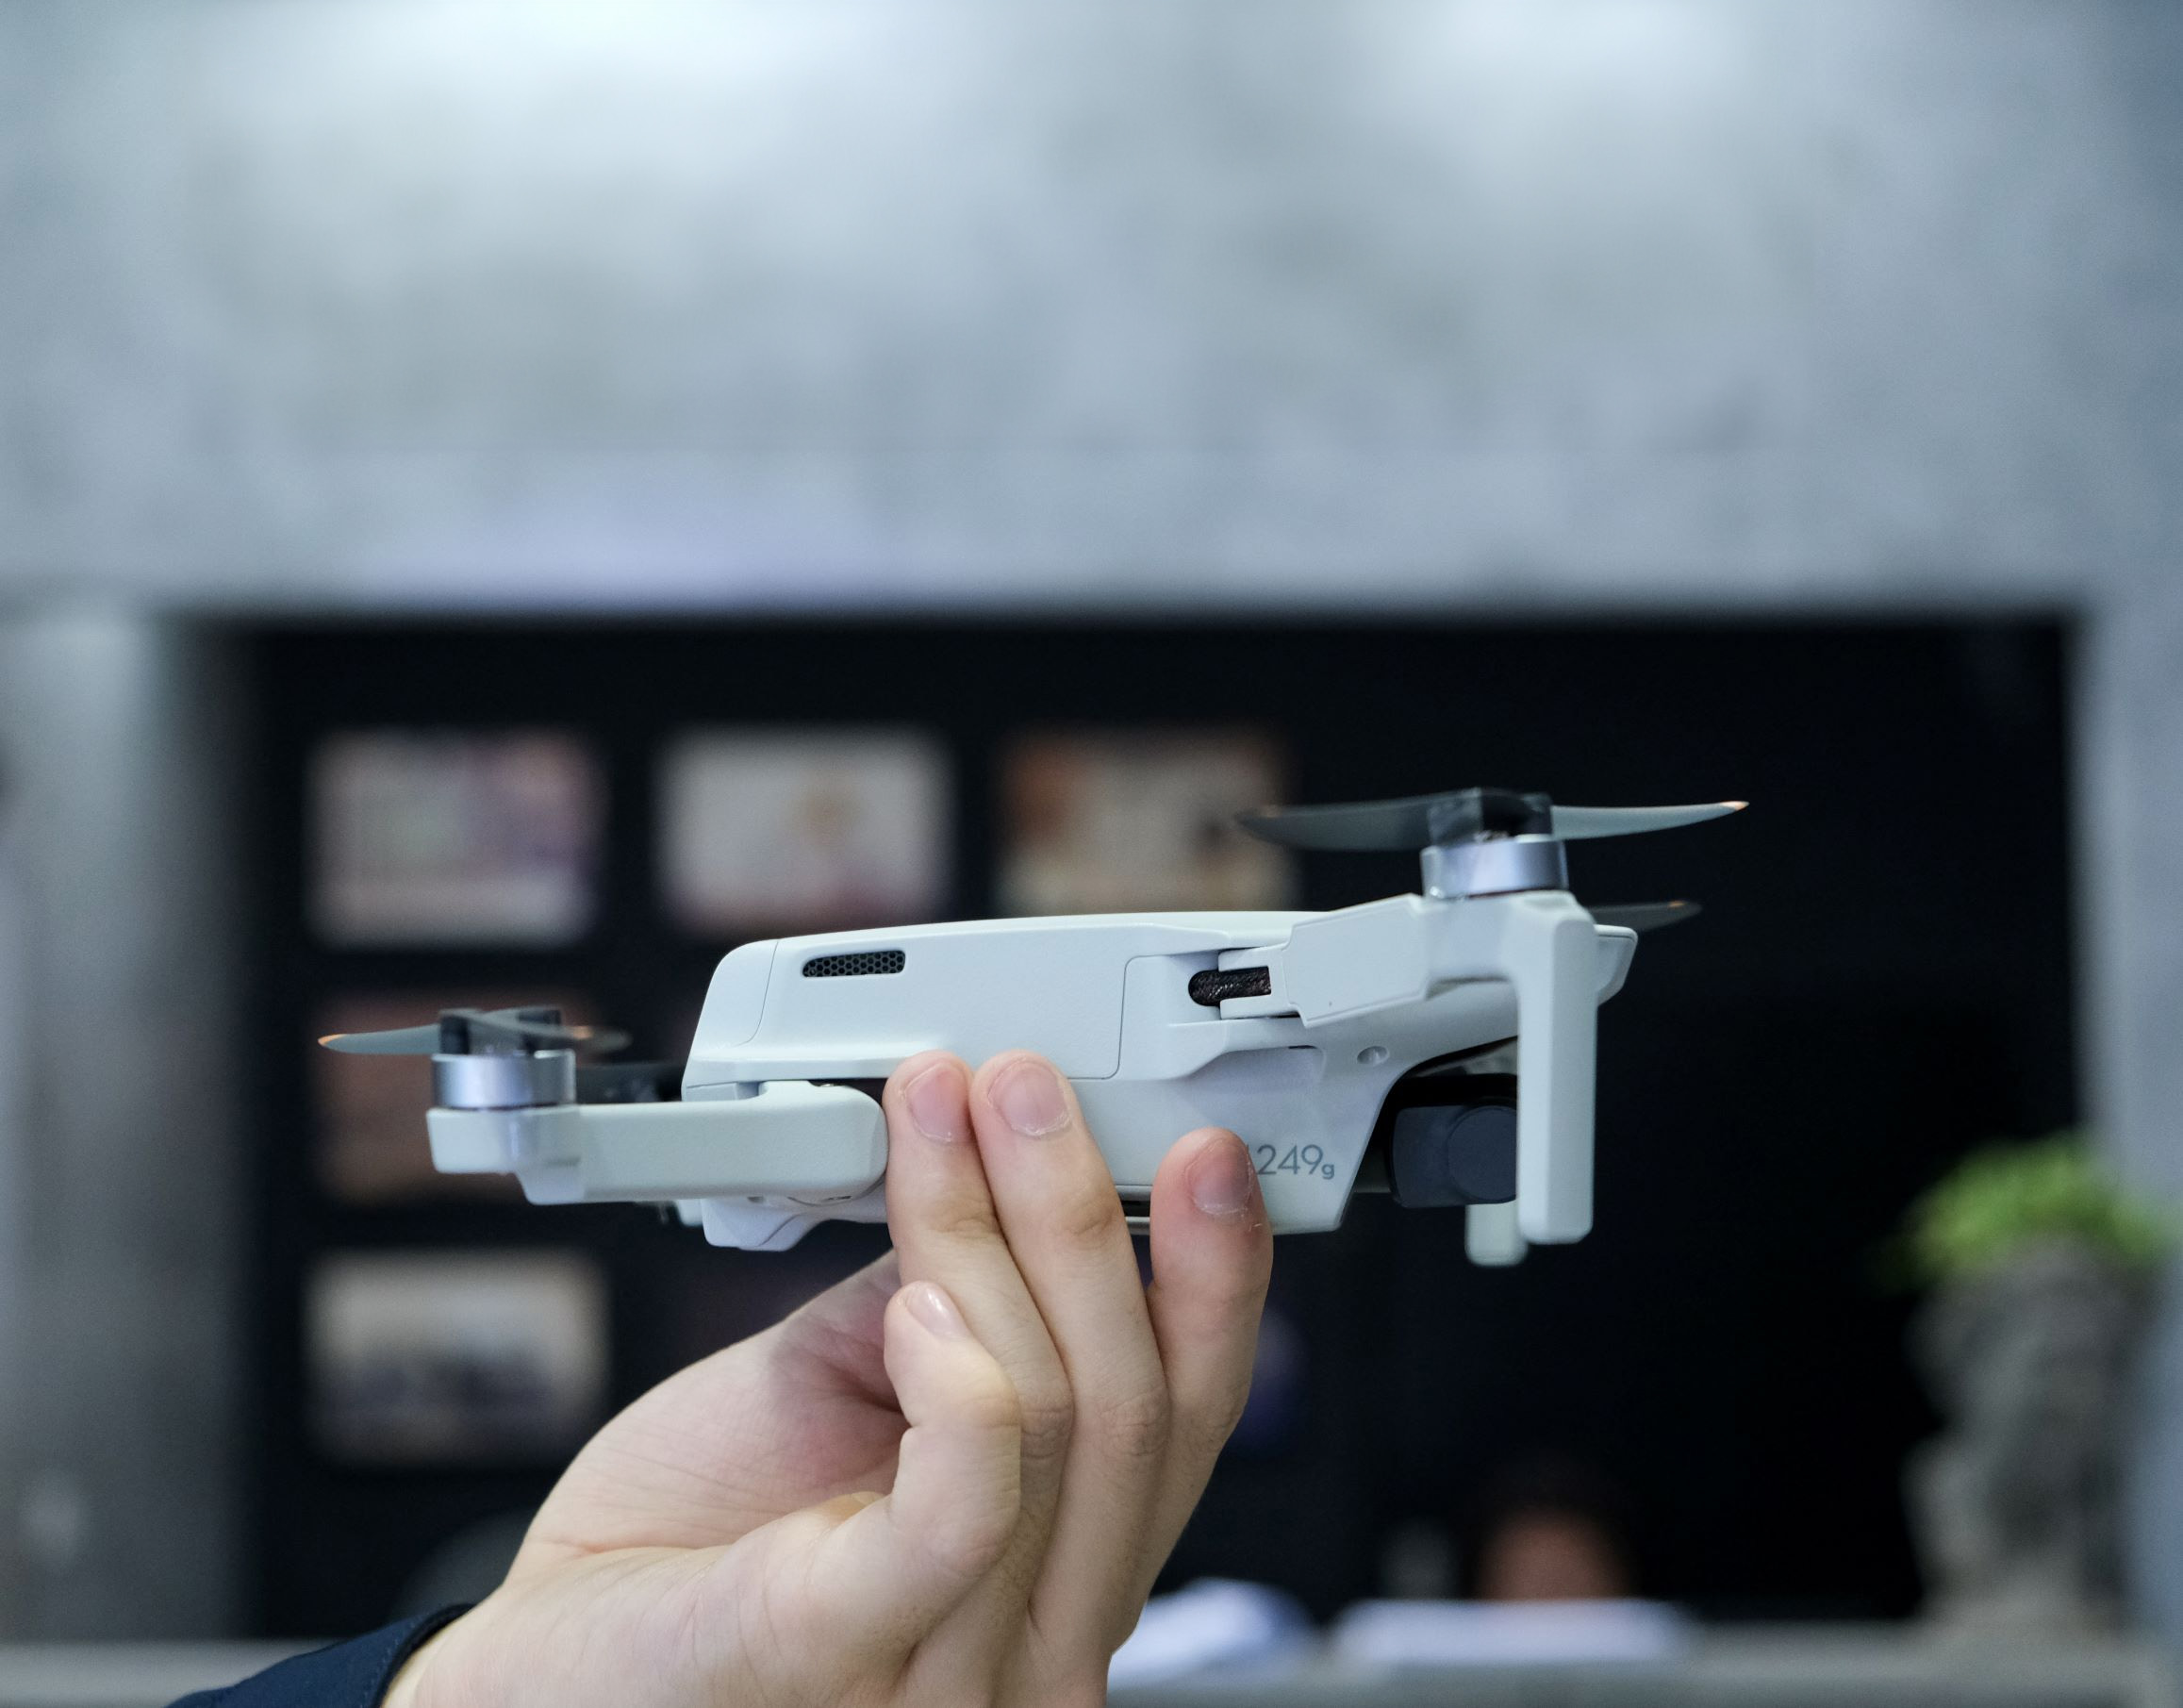 drone Mini 2 SE của DJI sẽ mang đến cho bạn những hình ảnh live view chất lượng 720p/30fps 